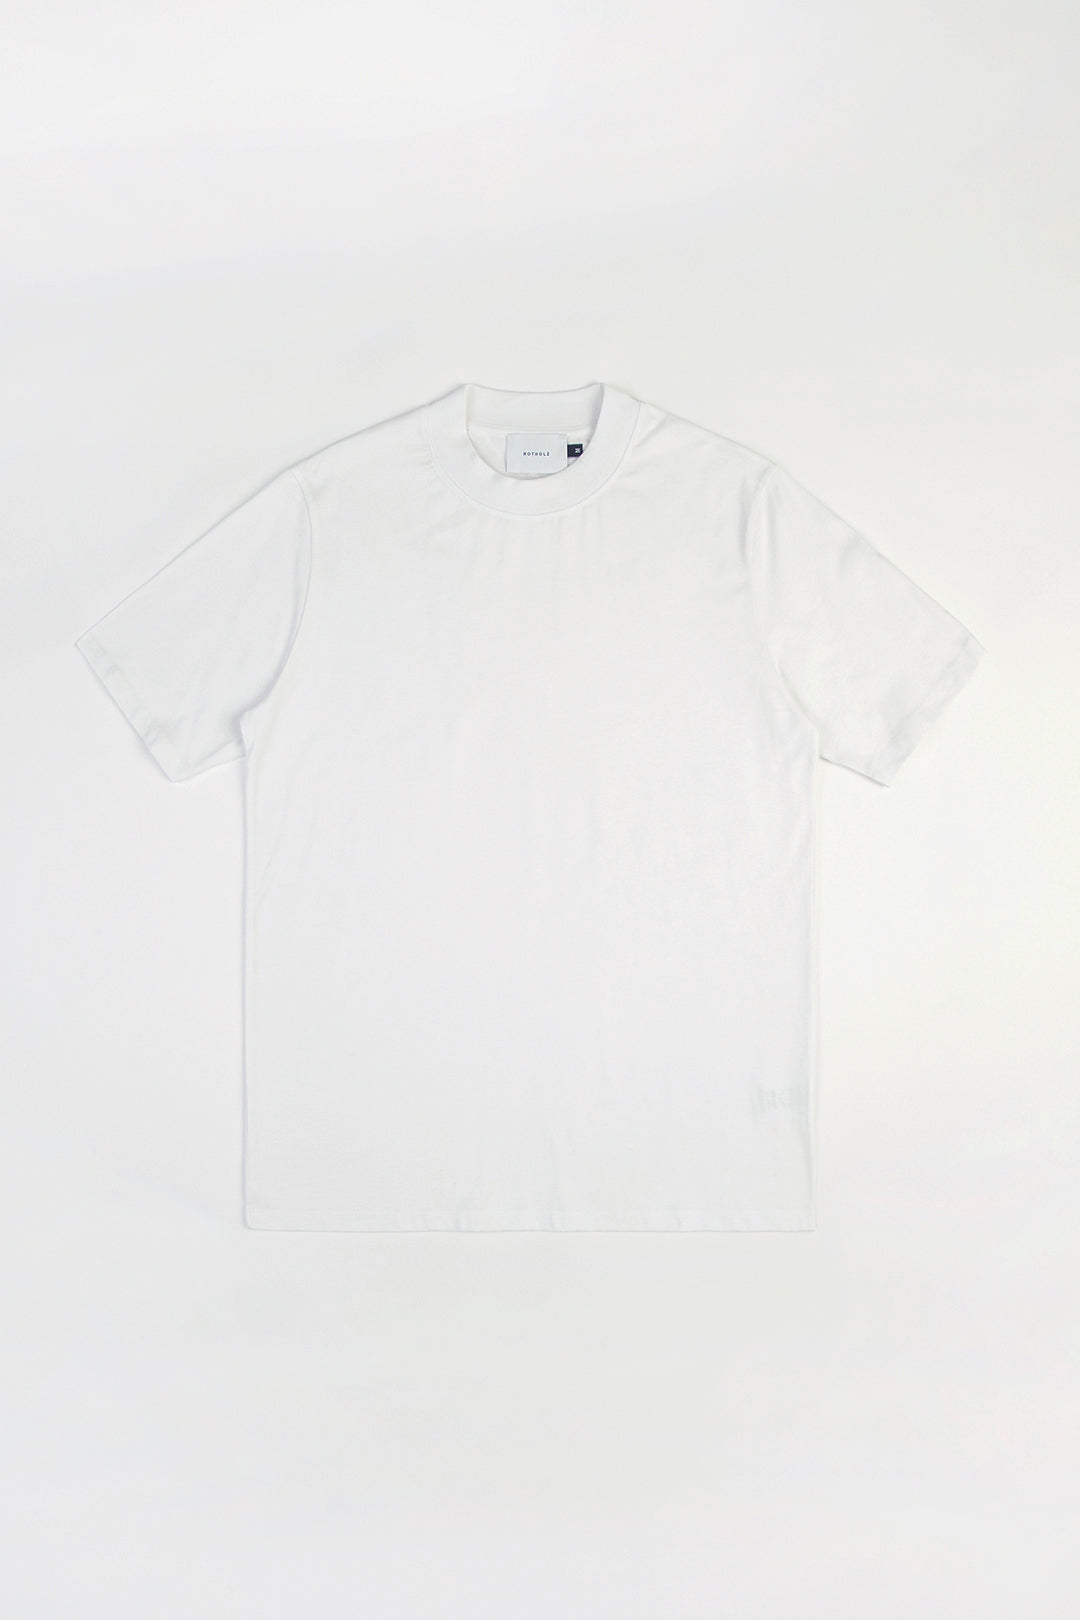 Weisses T-Shirt aus 100% Bio-Baumwolle von Rotholz